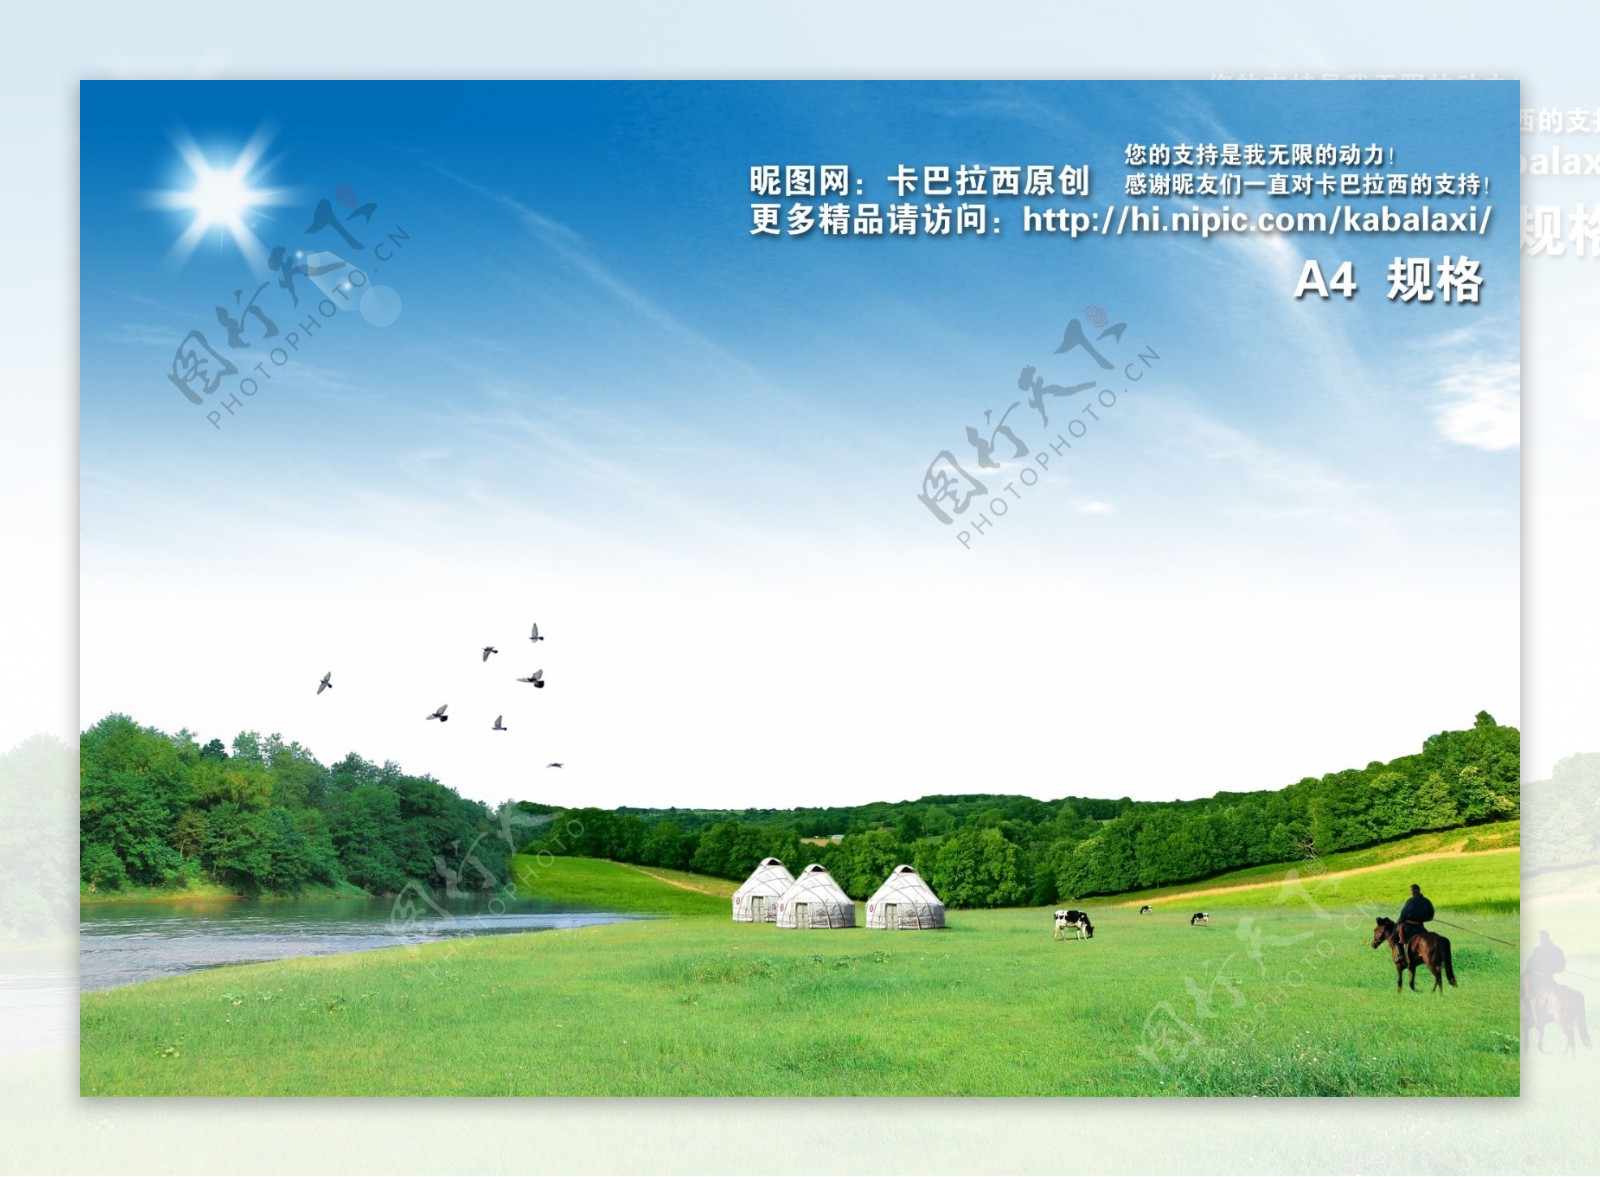 草原风景蓝天白云图片